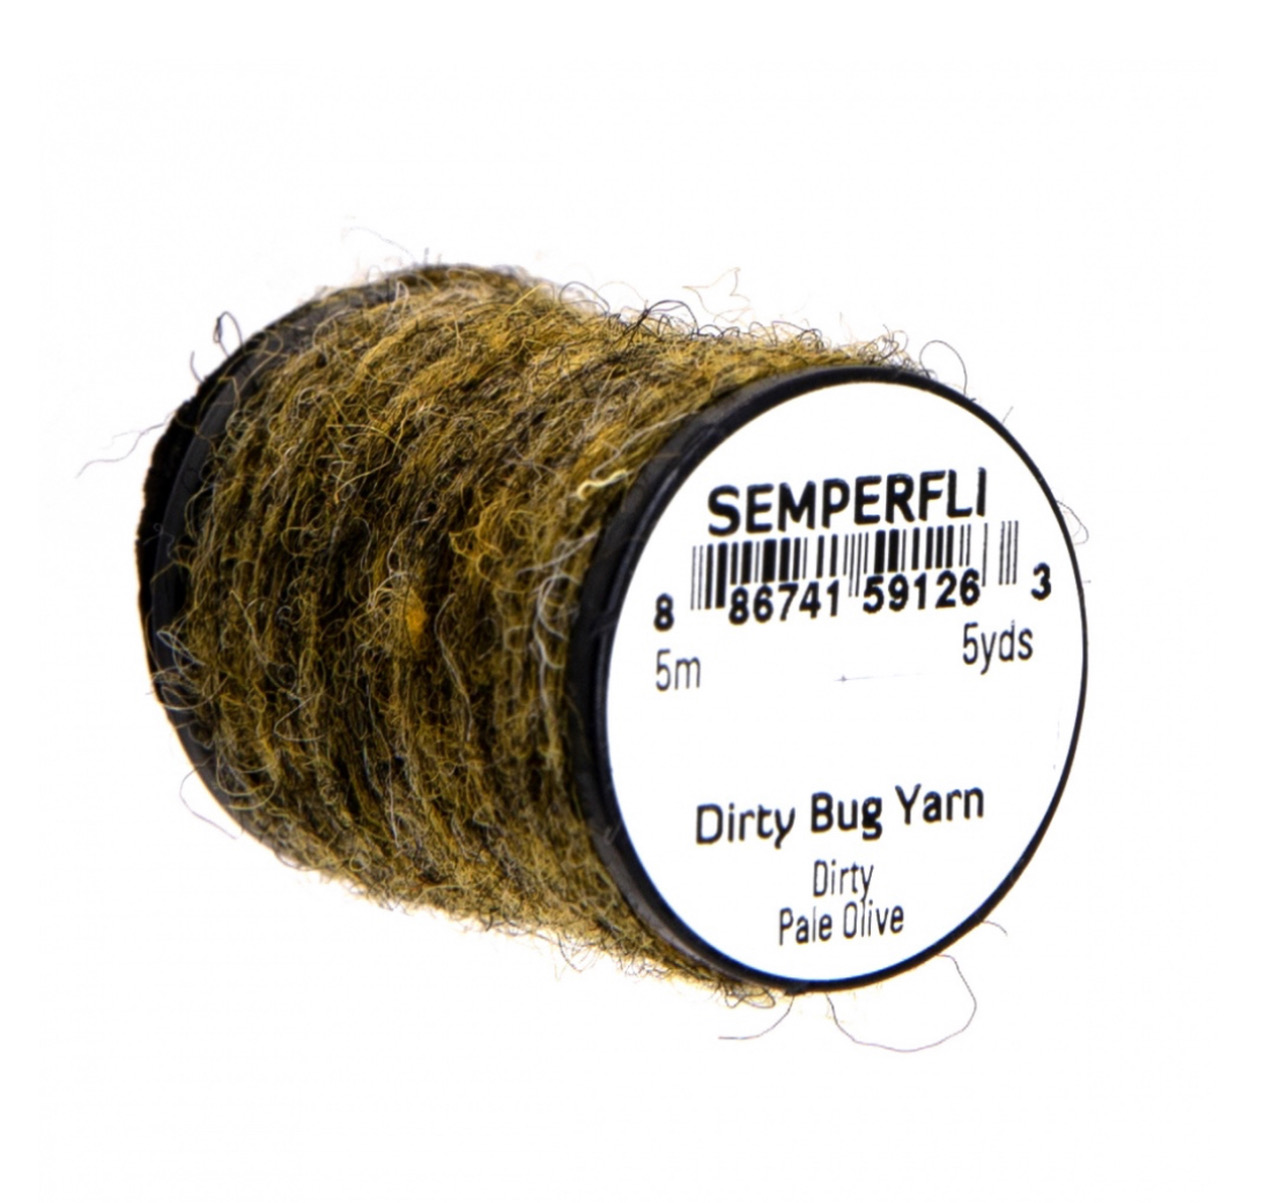 Semperfli Dirty Bug Yarn - Pale Olive (Dirty)